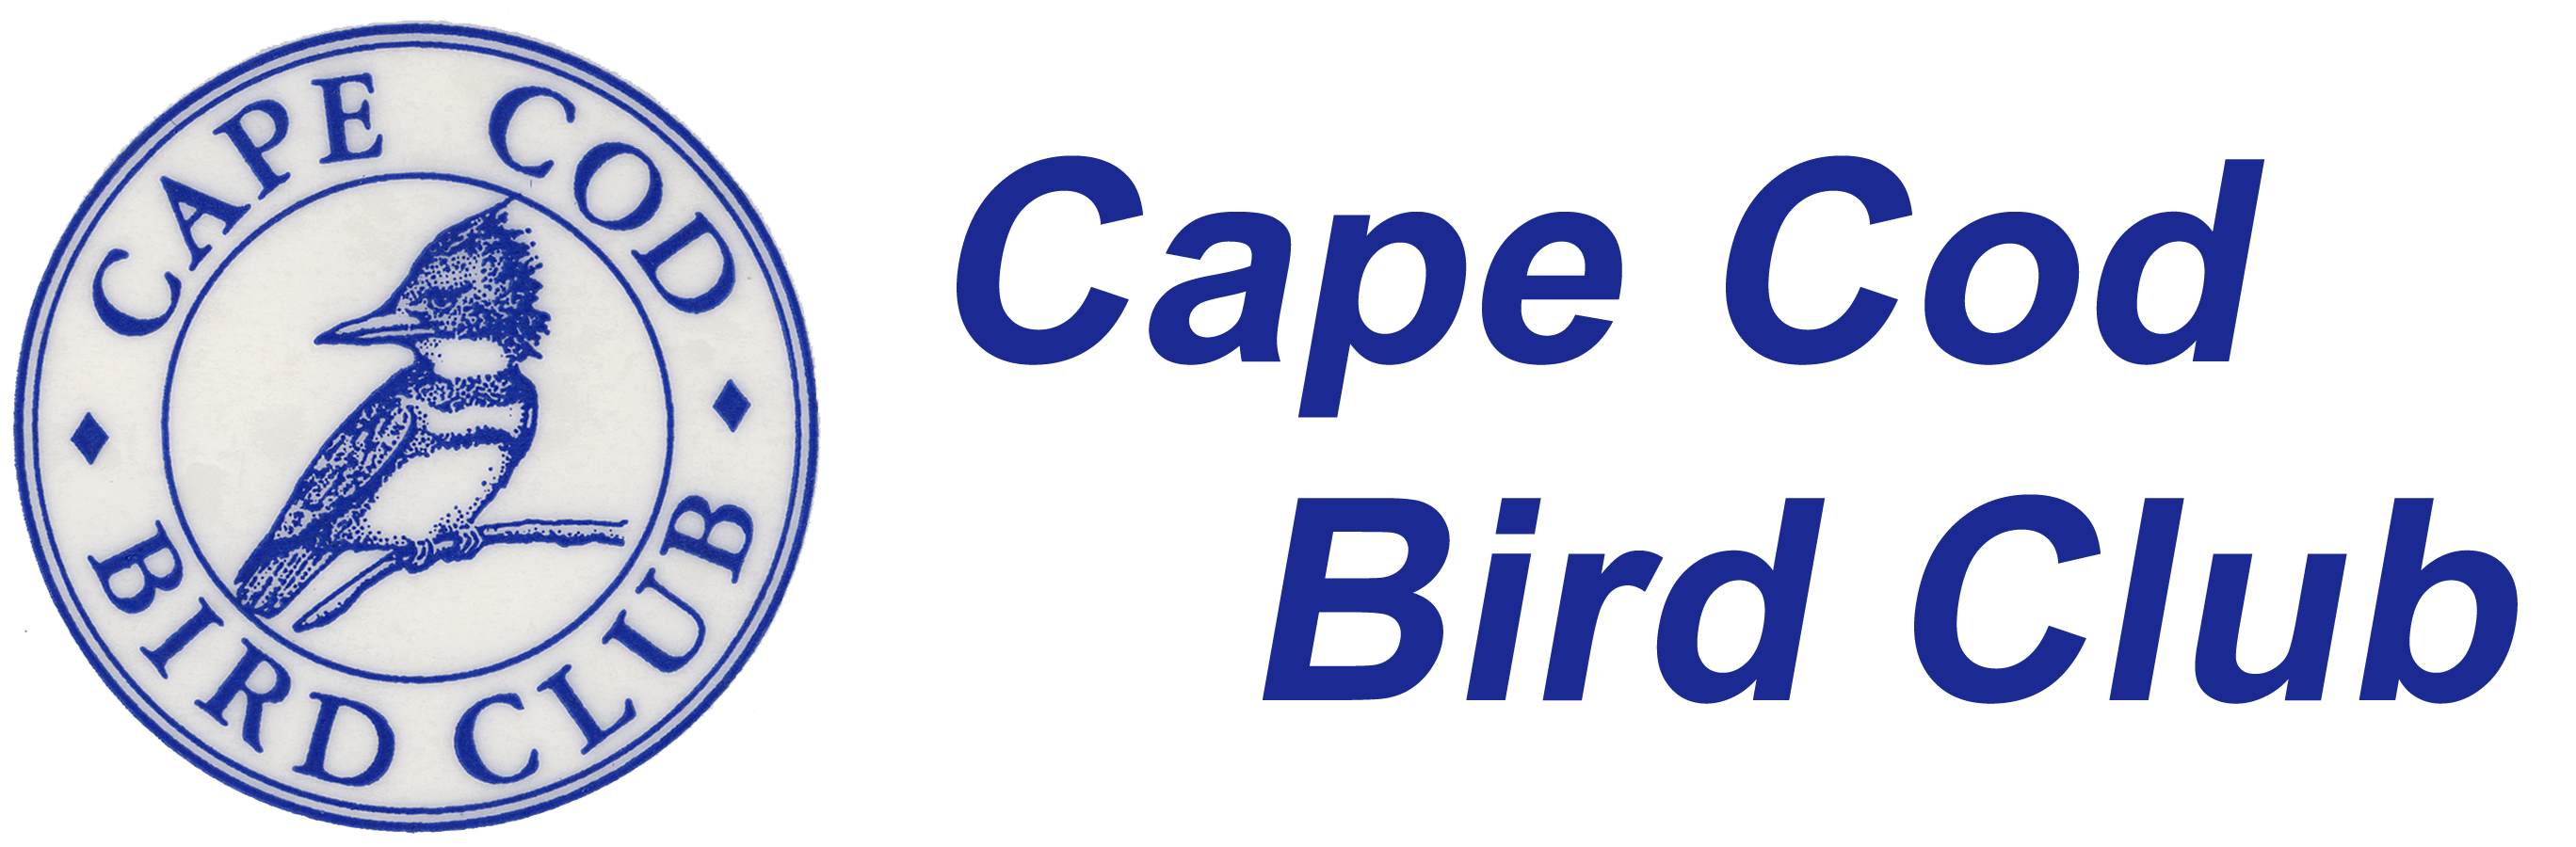 Cape Cod Bird Club.